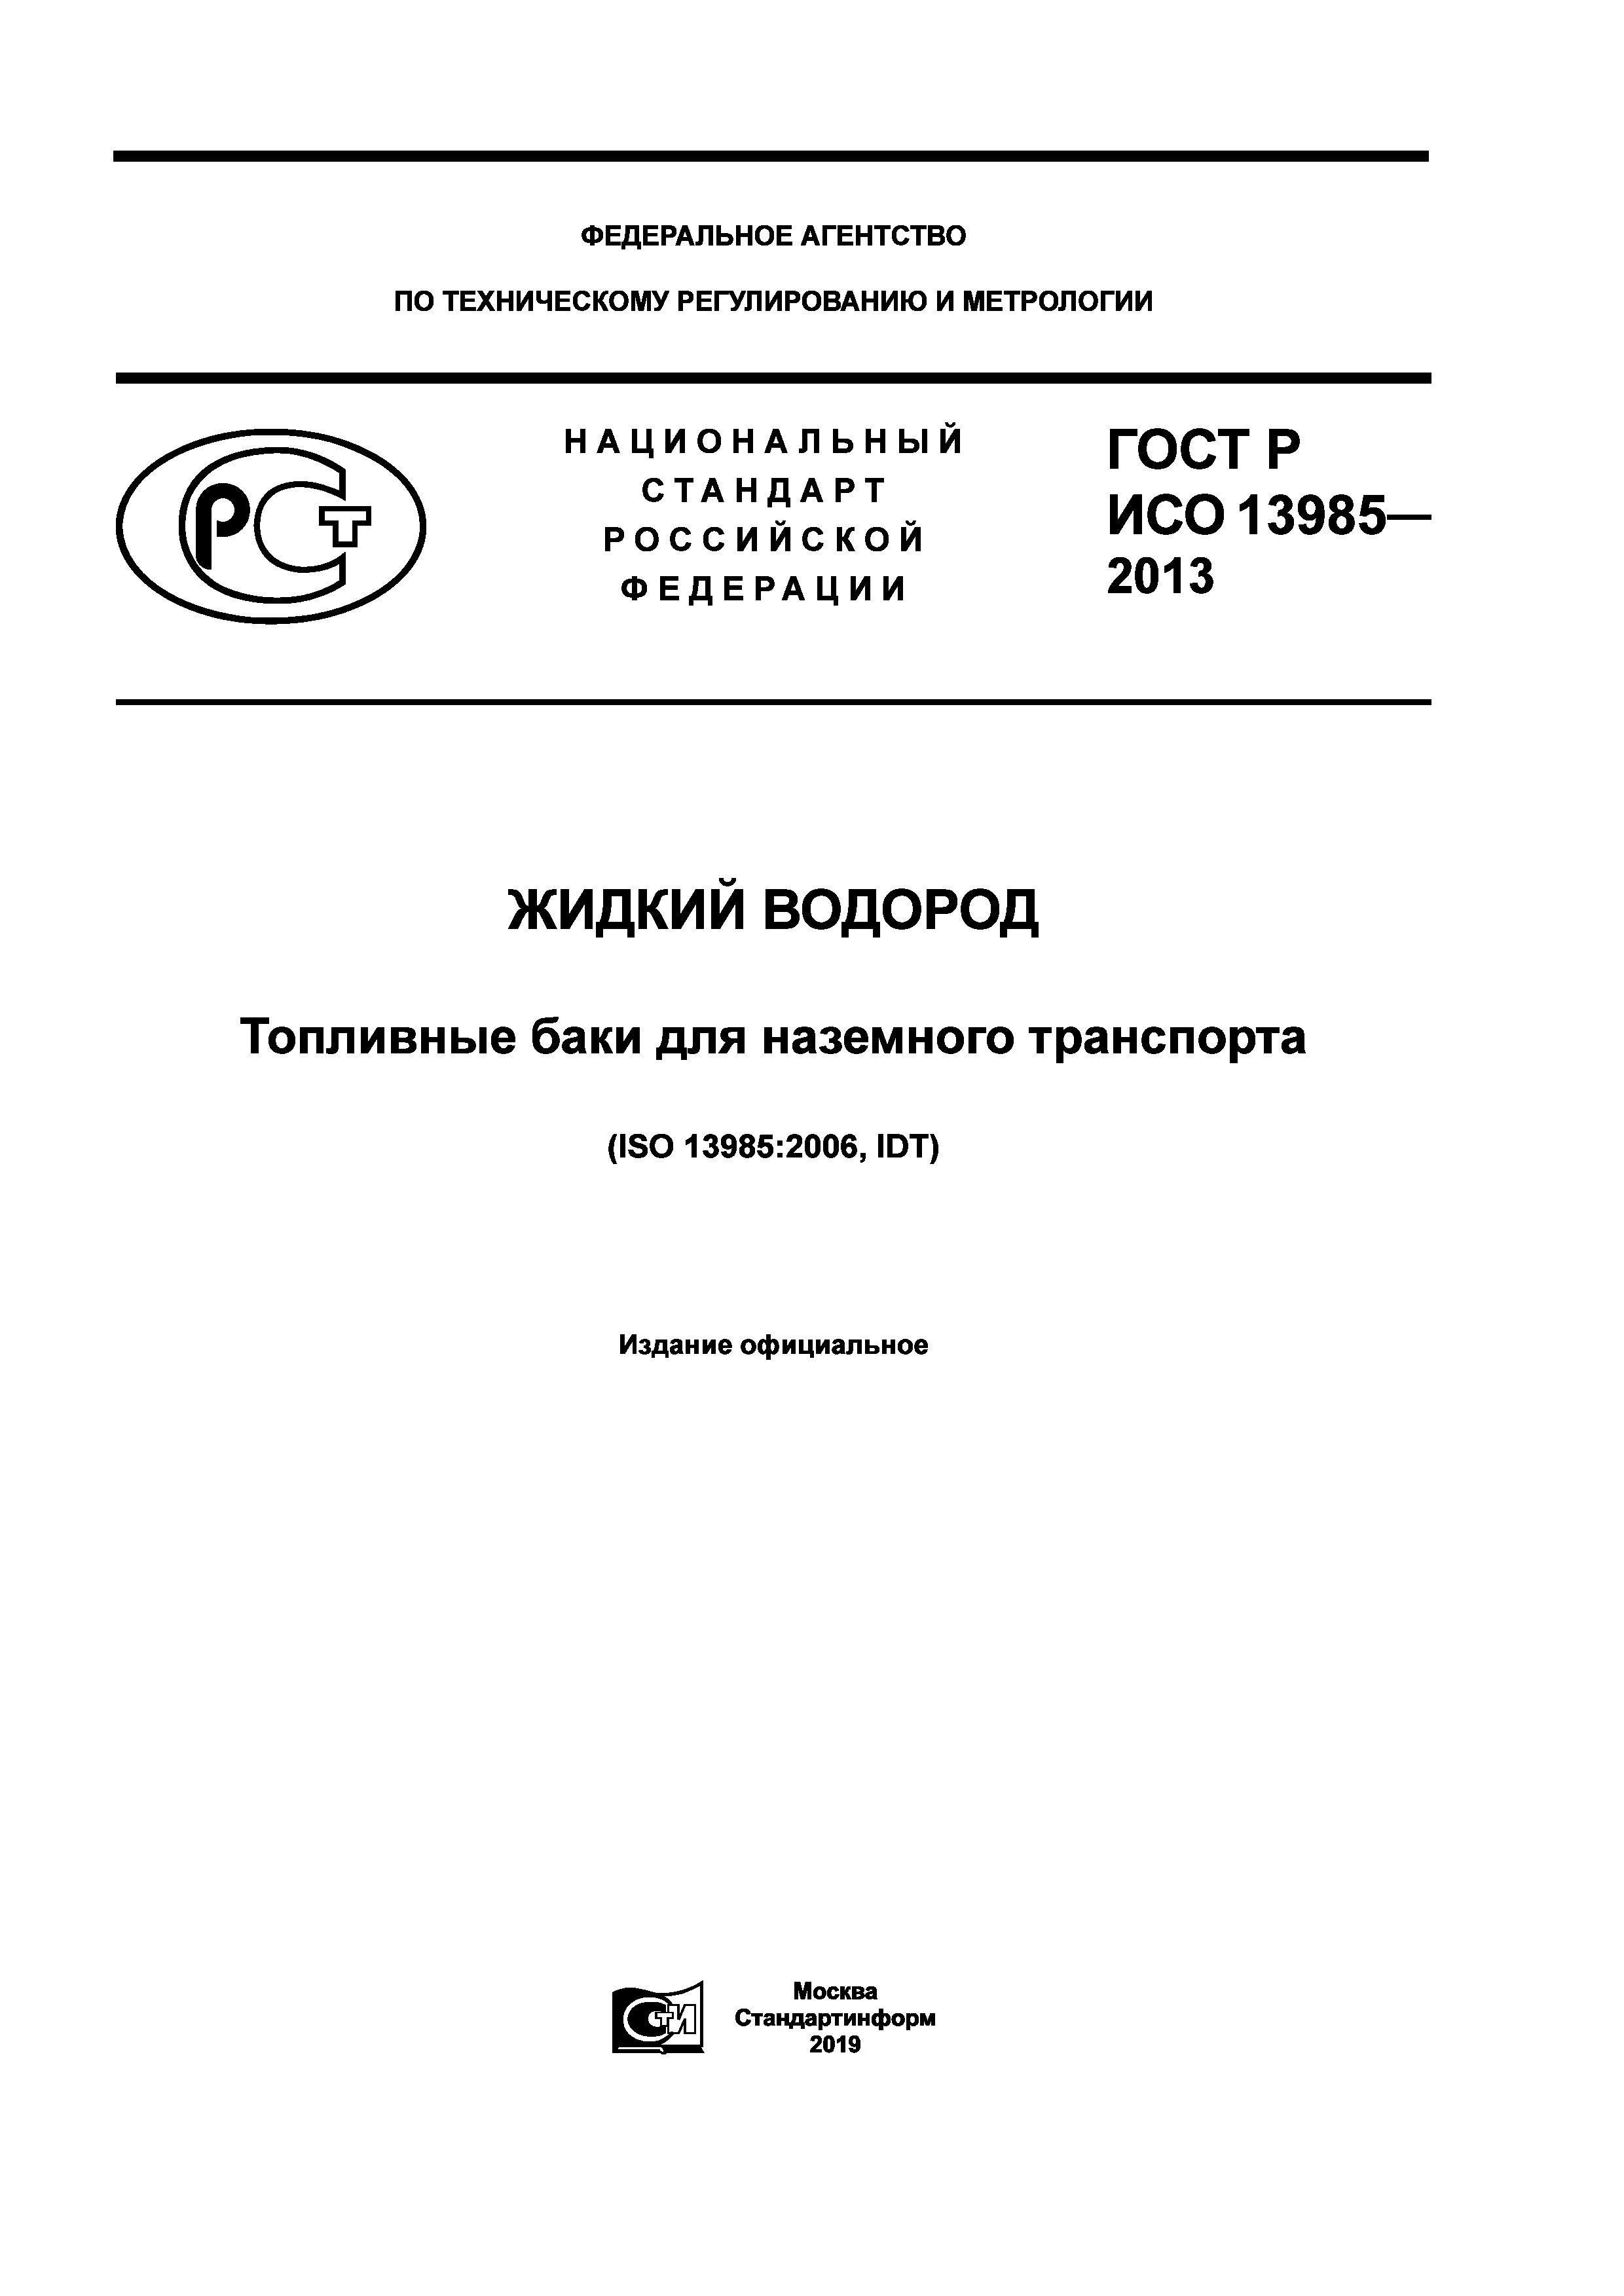 ГОСТ Р ИСО 13985-2013